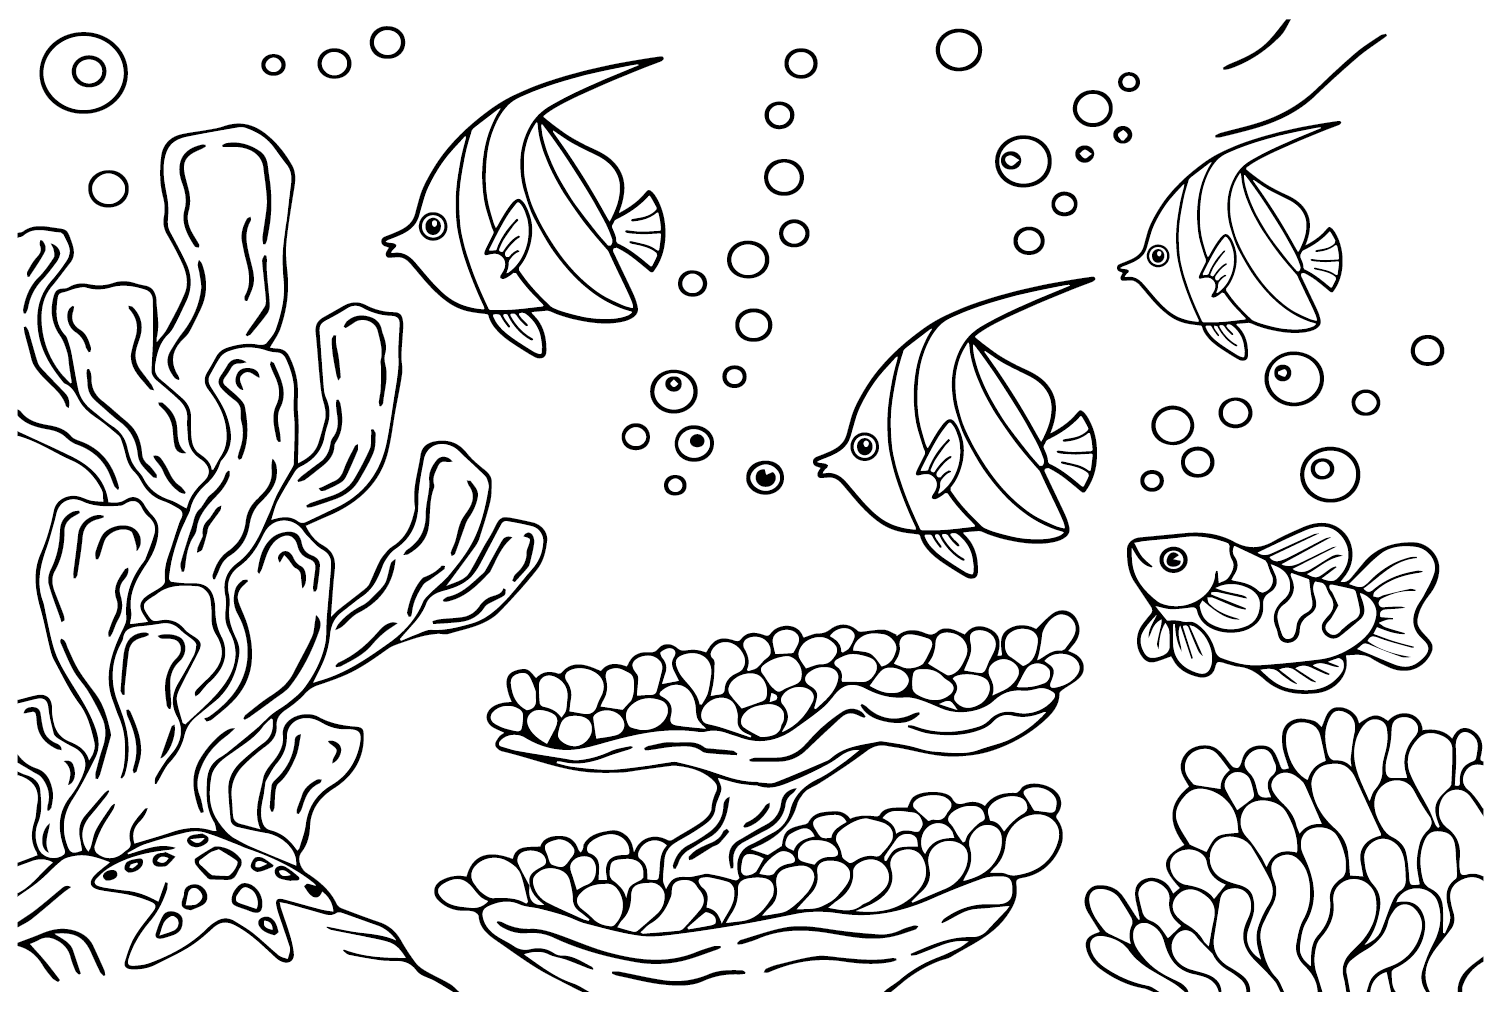 Распечатка вымпела Coralfish от Pennant Coralfish